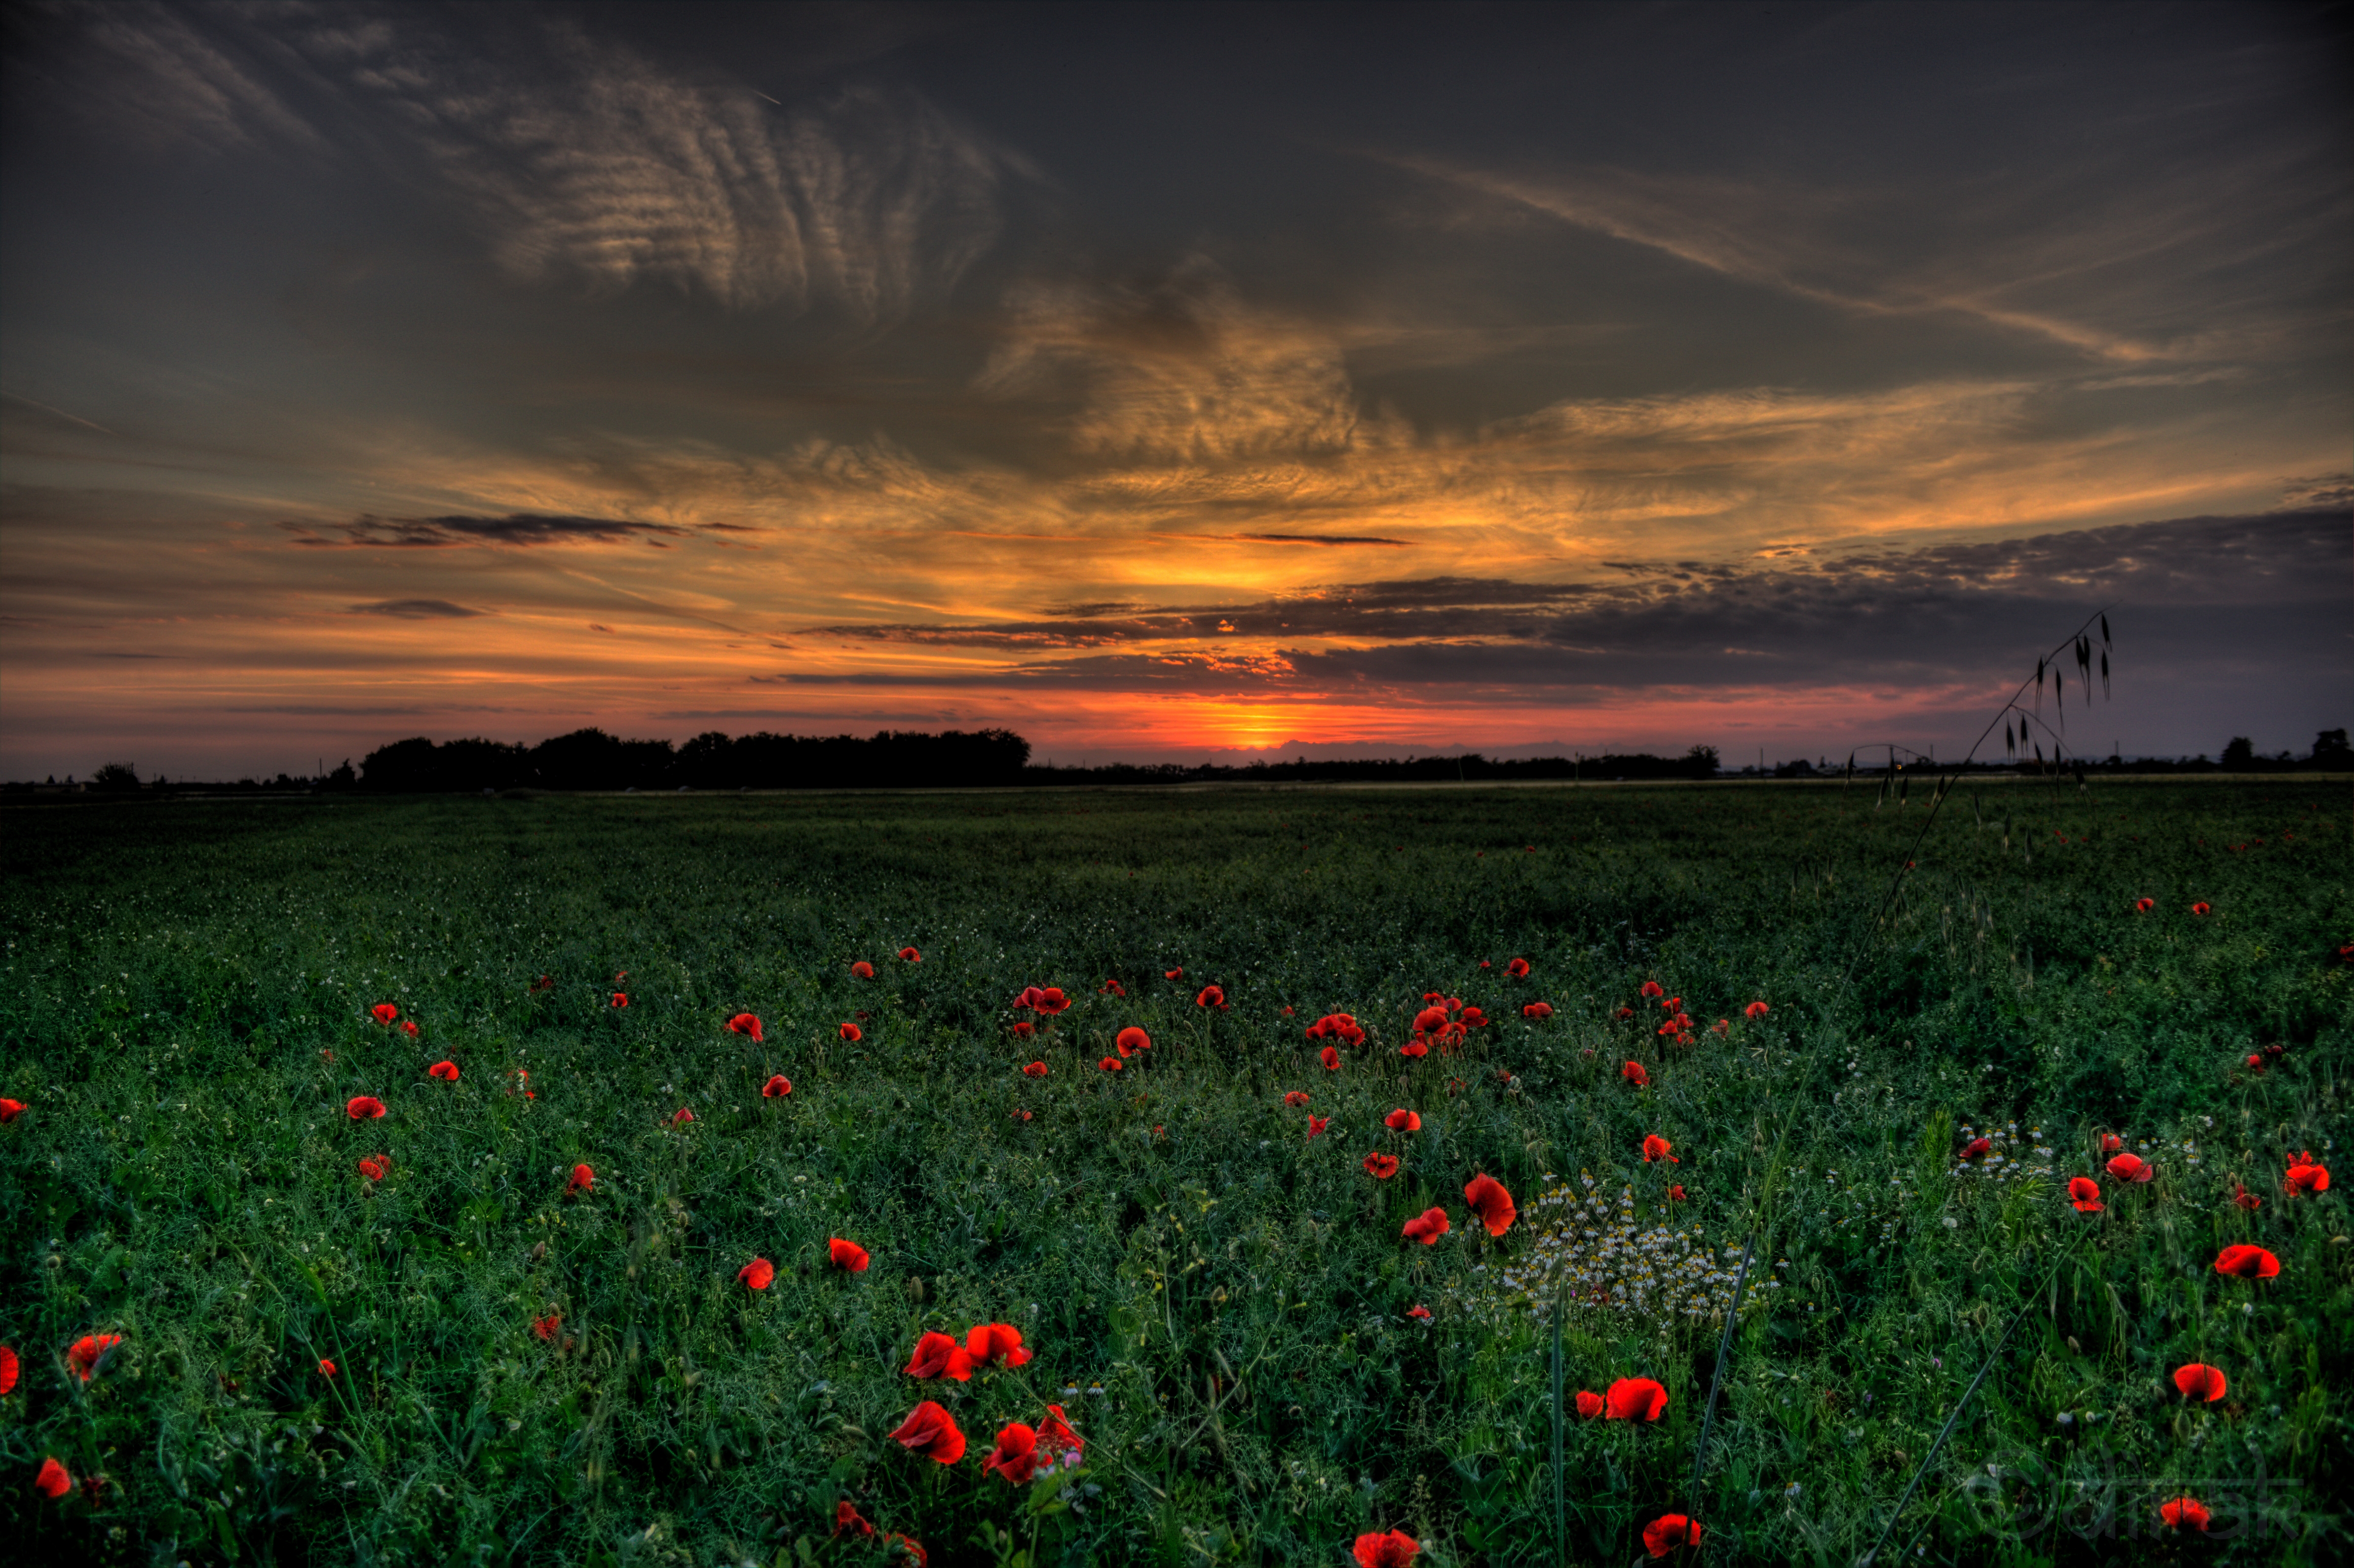 Бесплатное фото Закат на поле с красными цветами